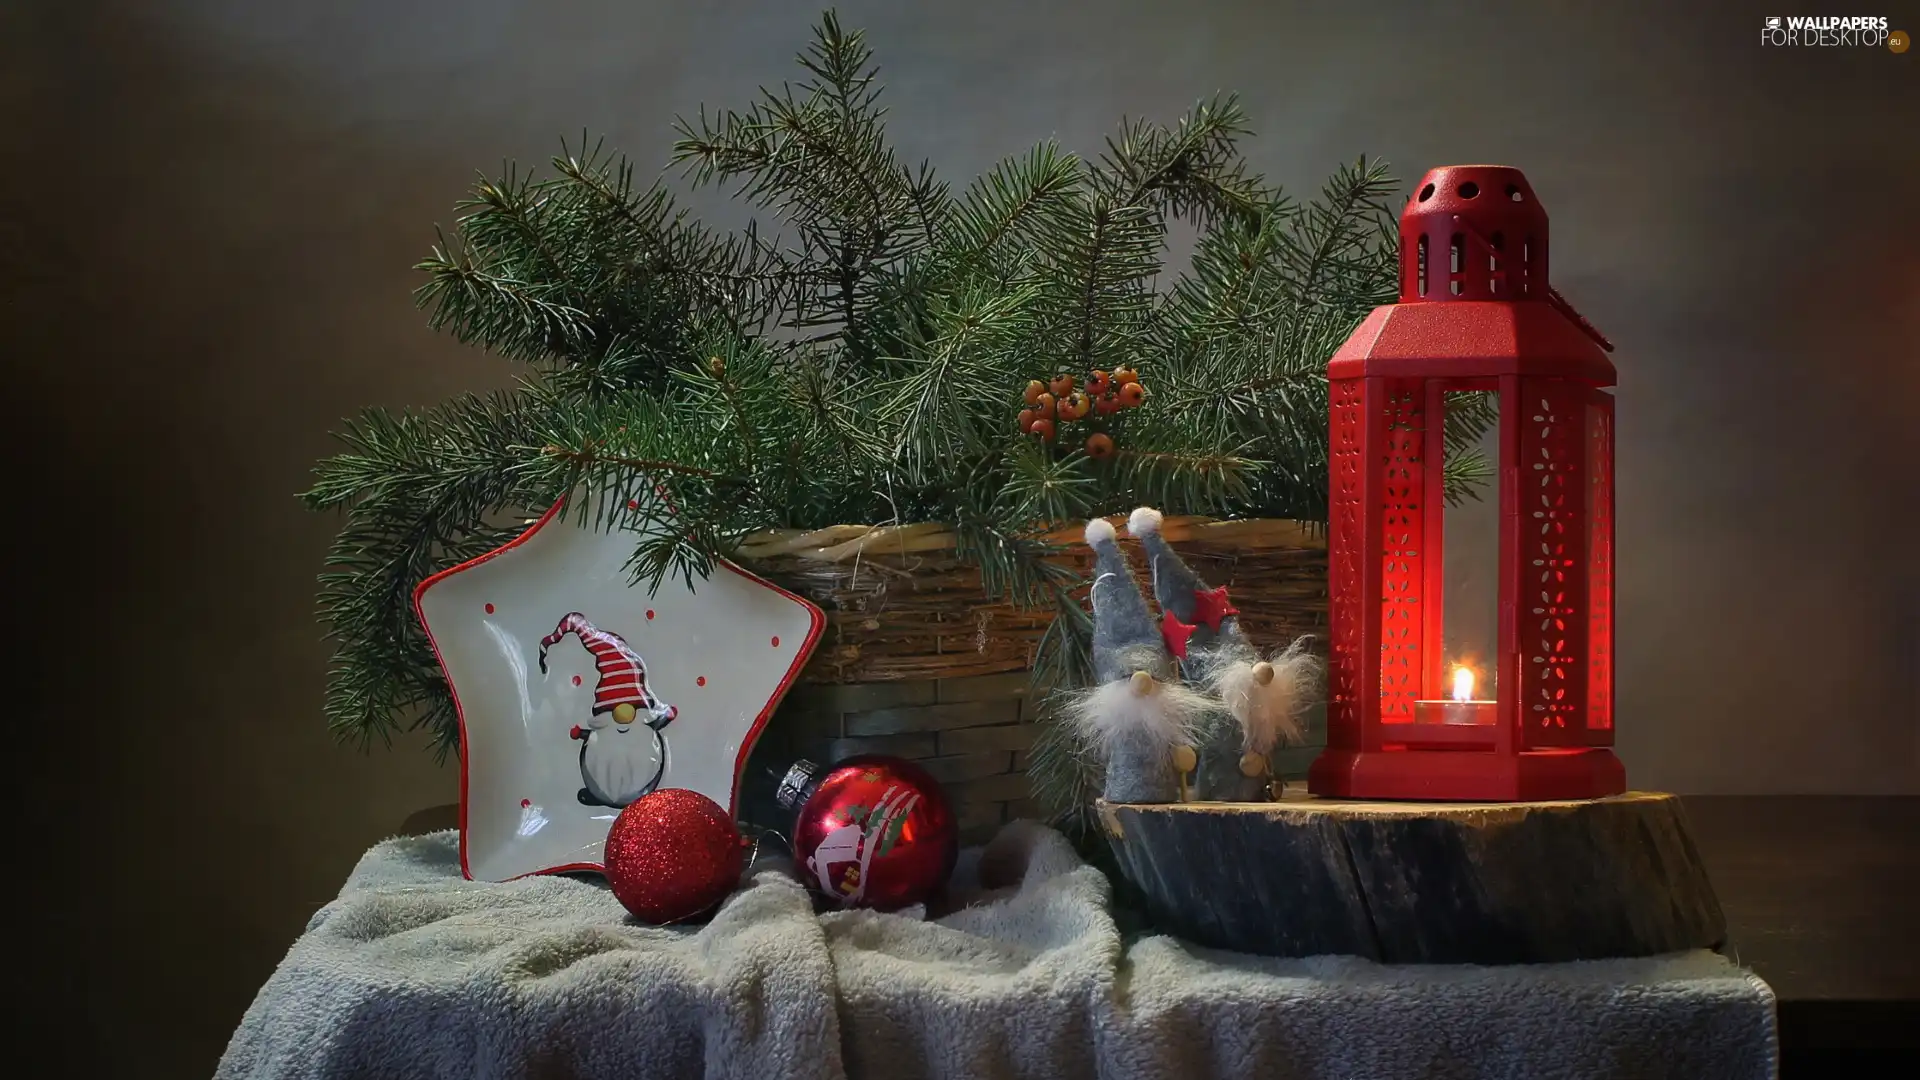 baubles, Christmas, Twigs, lantern, composition, basket, dwarfs